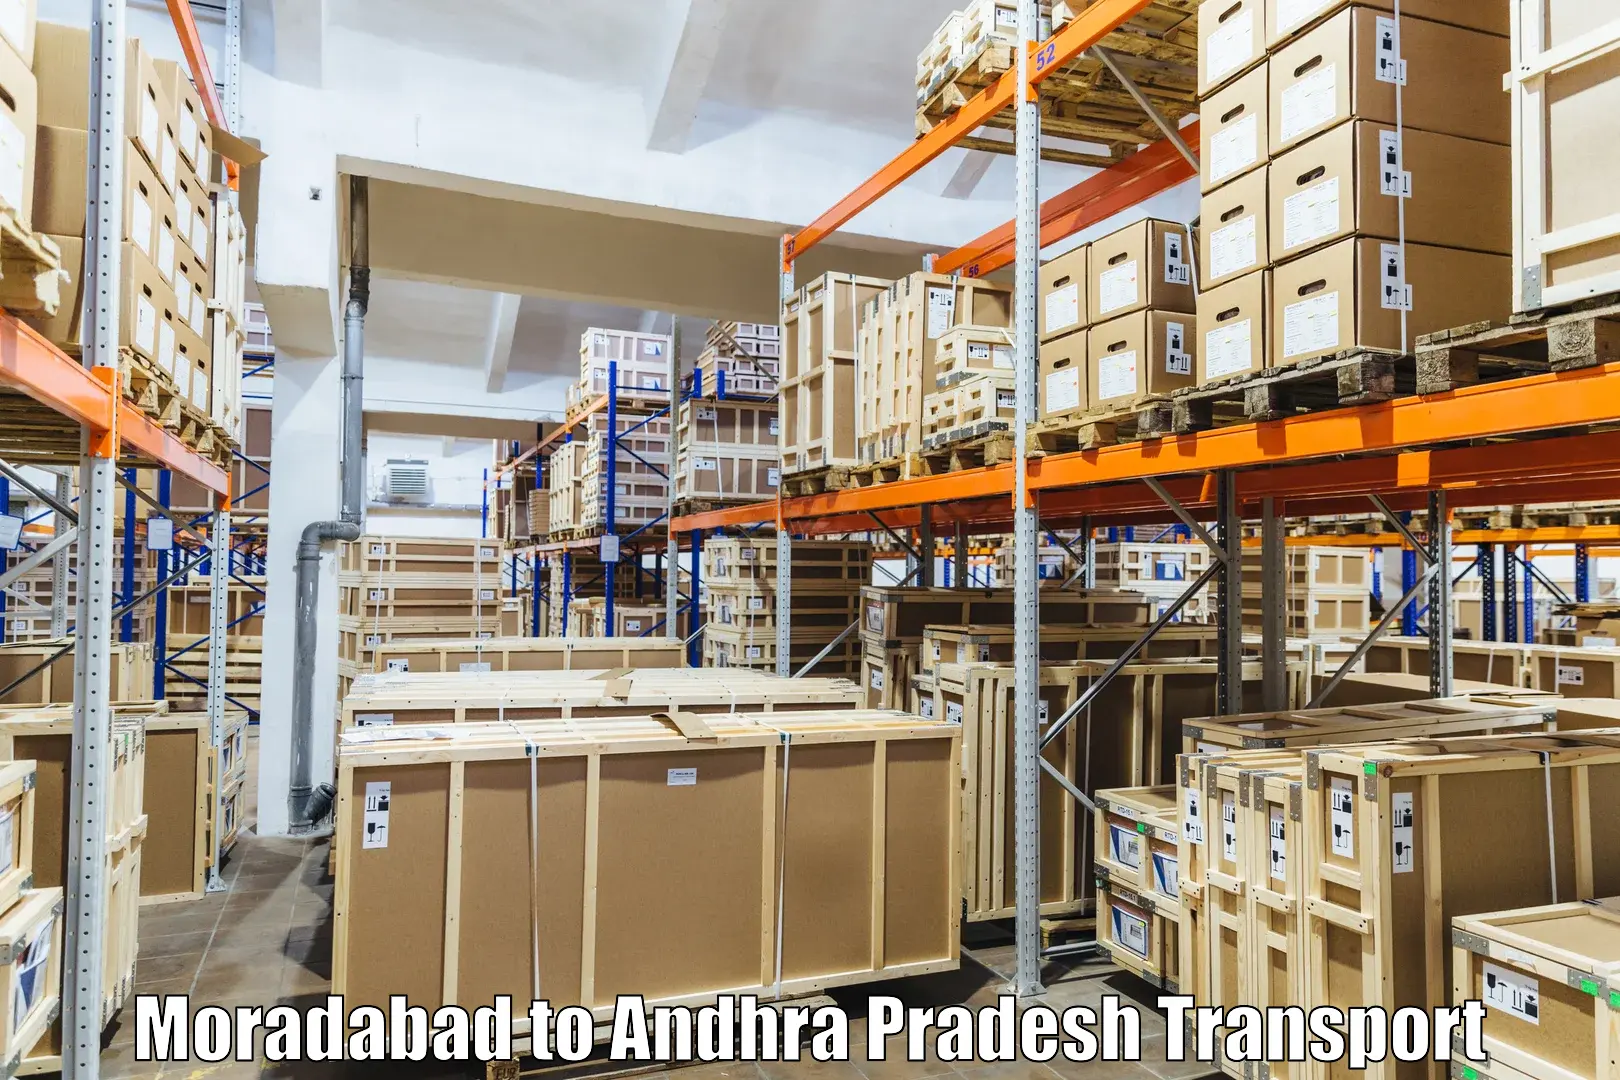 International cargo transportation services Moradabad to Bobbili